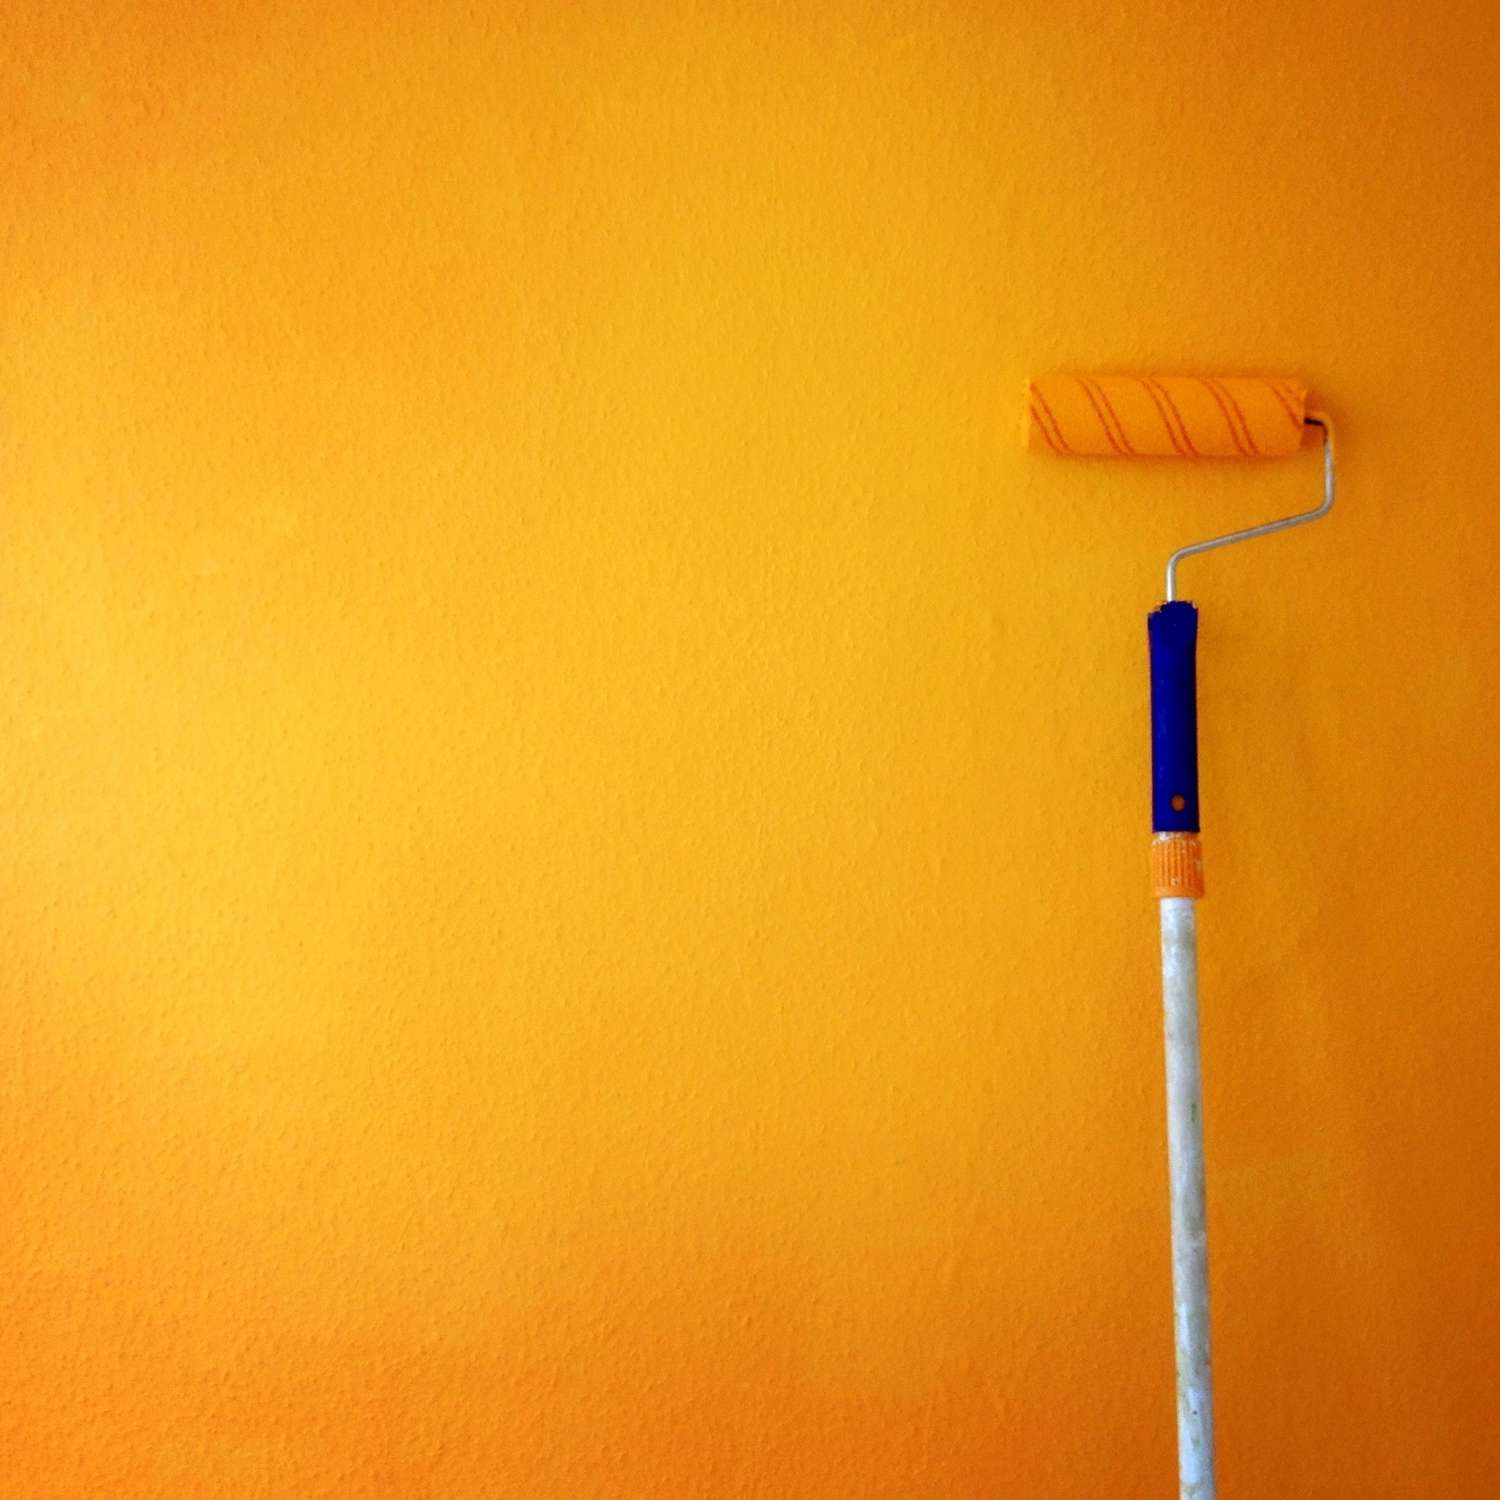 Rouleau de peinture sur mur jaune